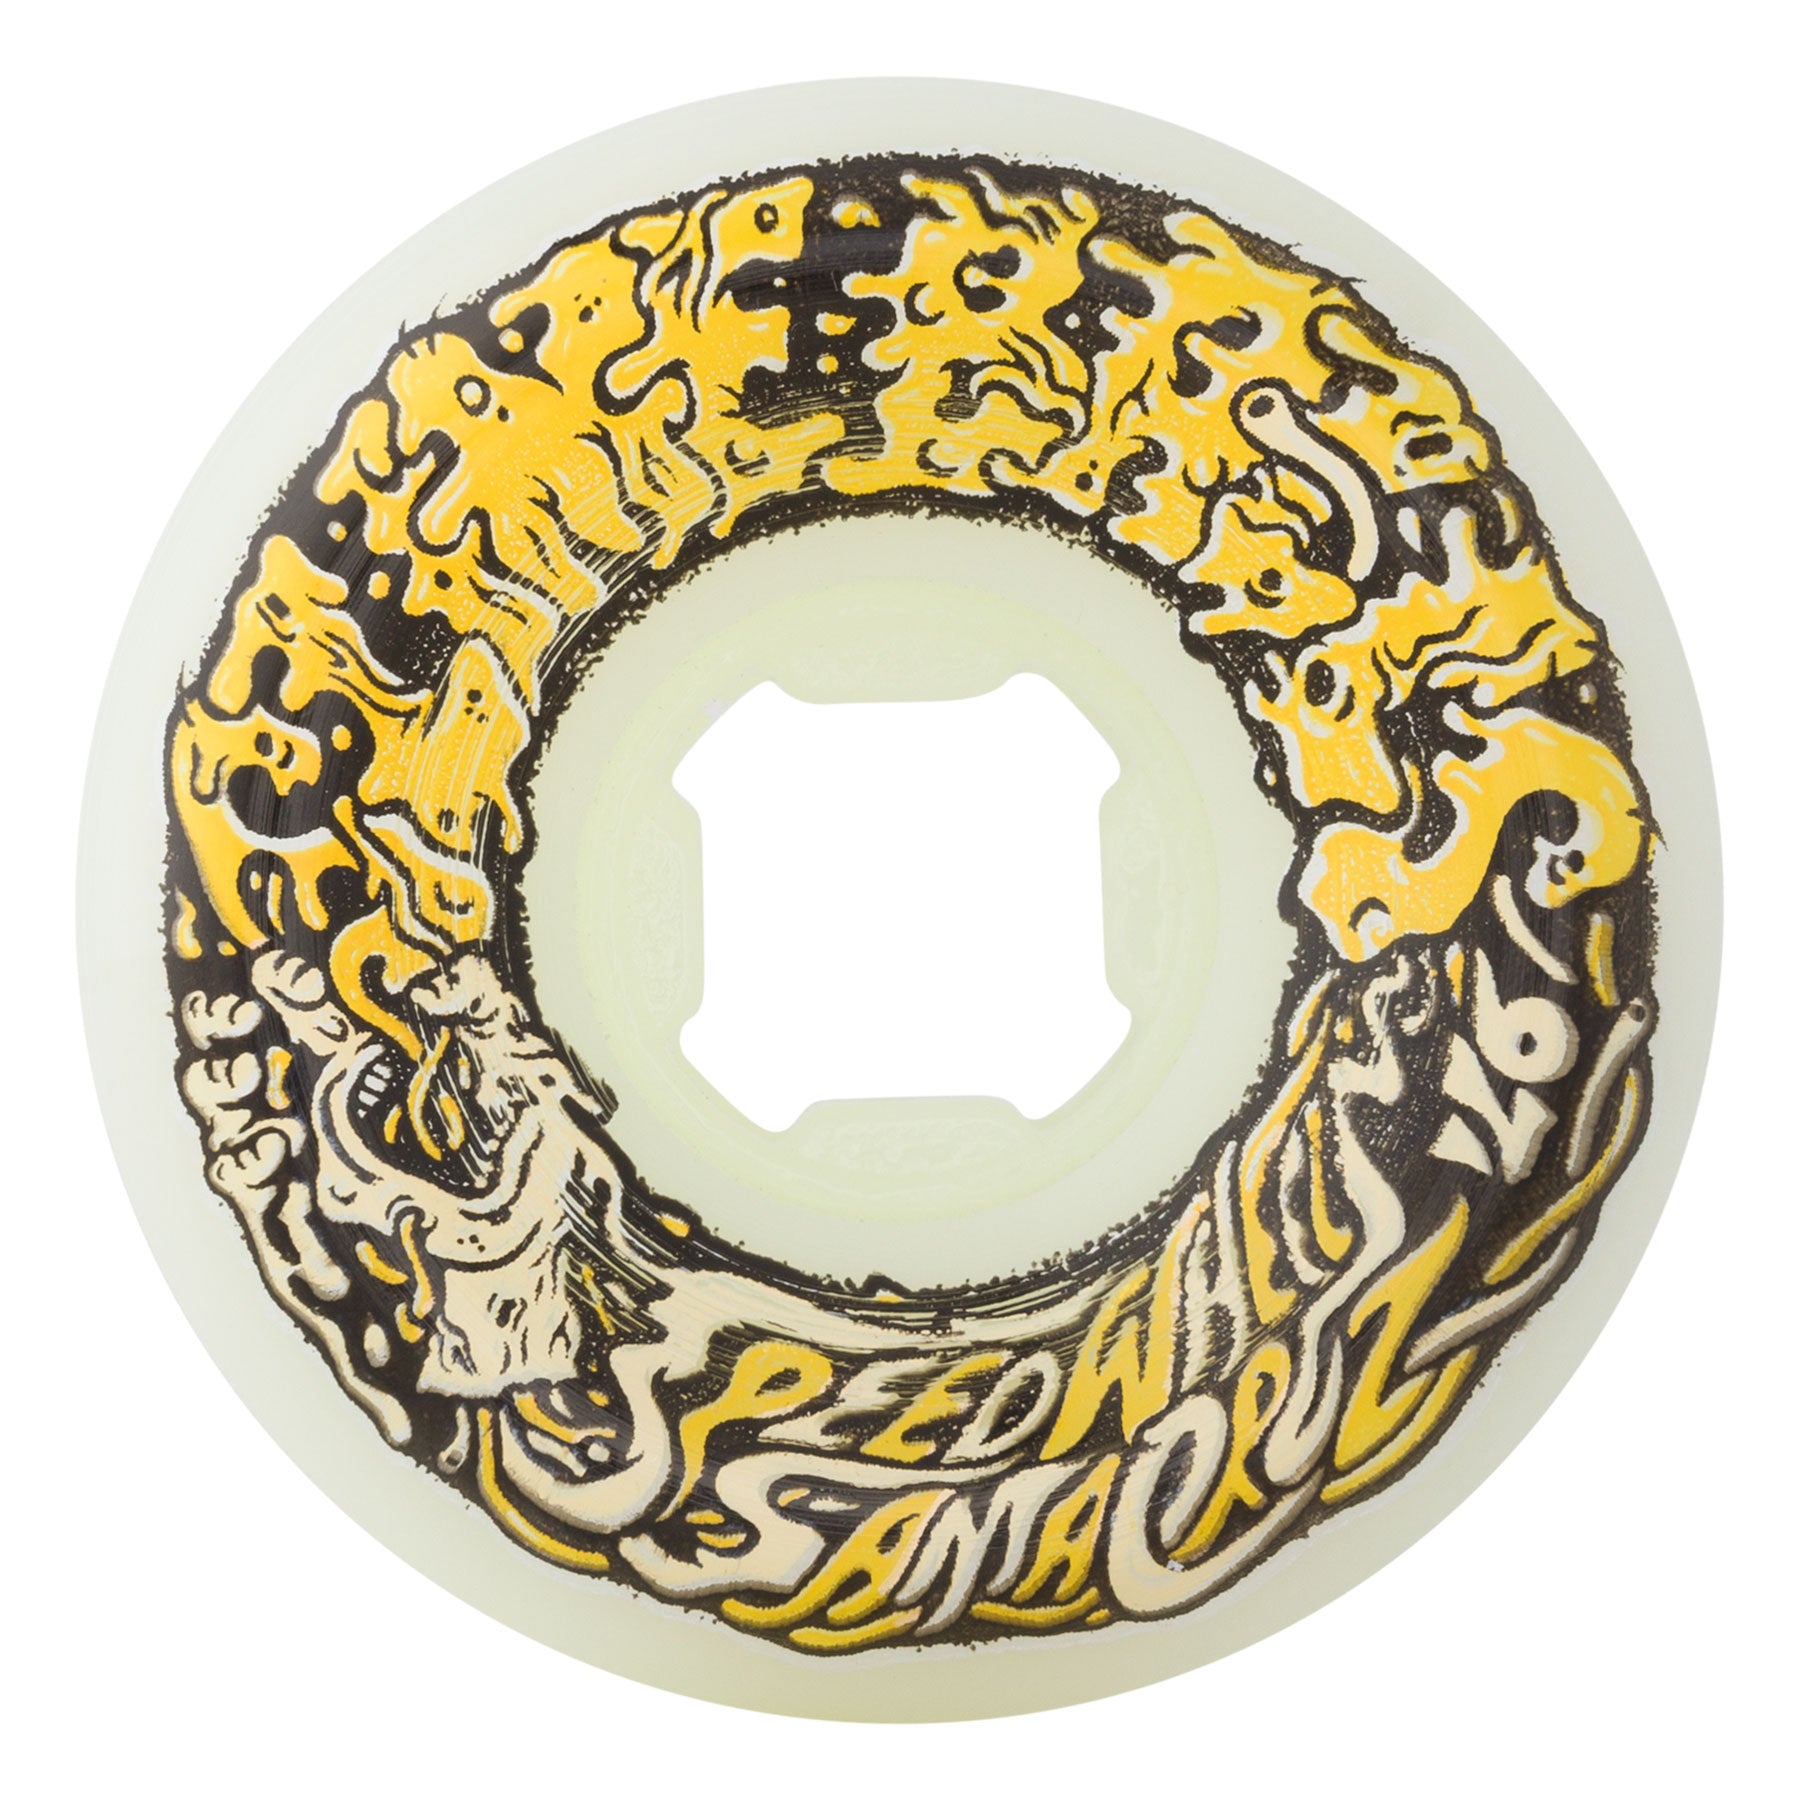 56mm Vomit Mini White Yellow 97a | Slime Balls Skateboard Wheels